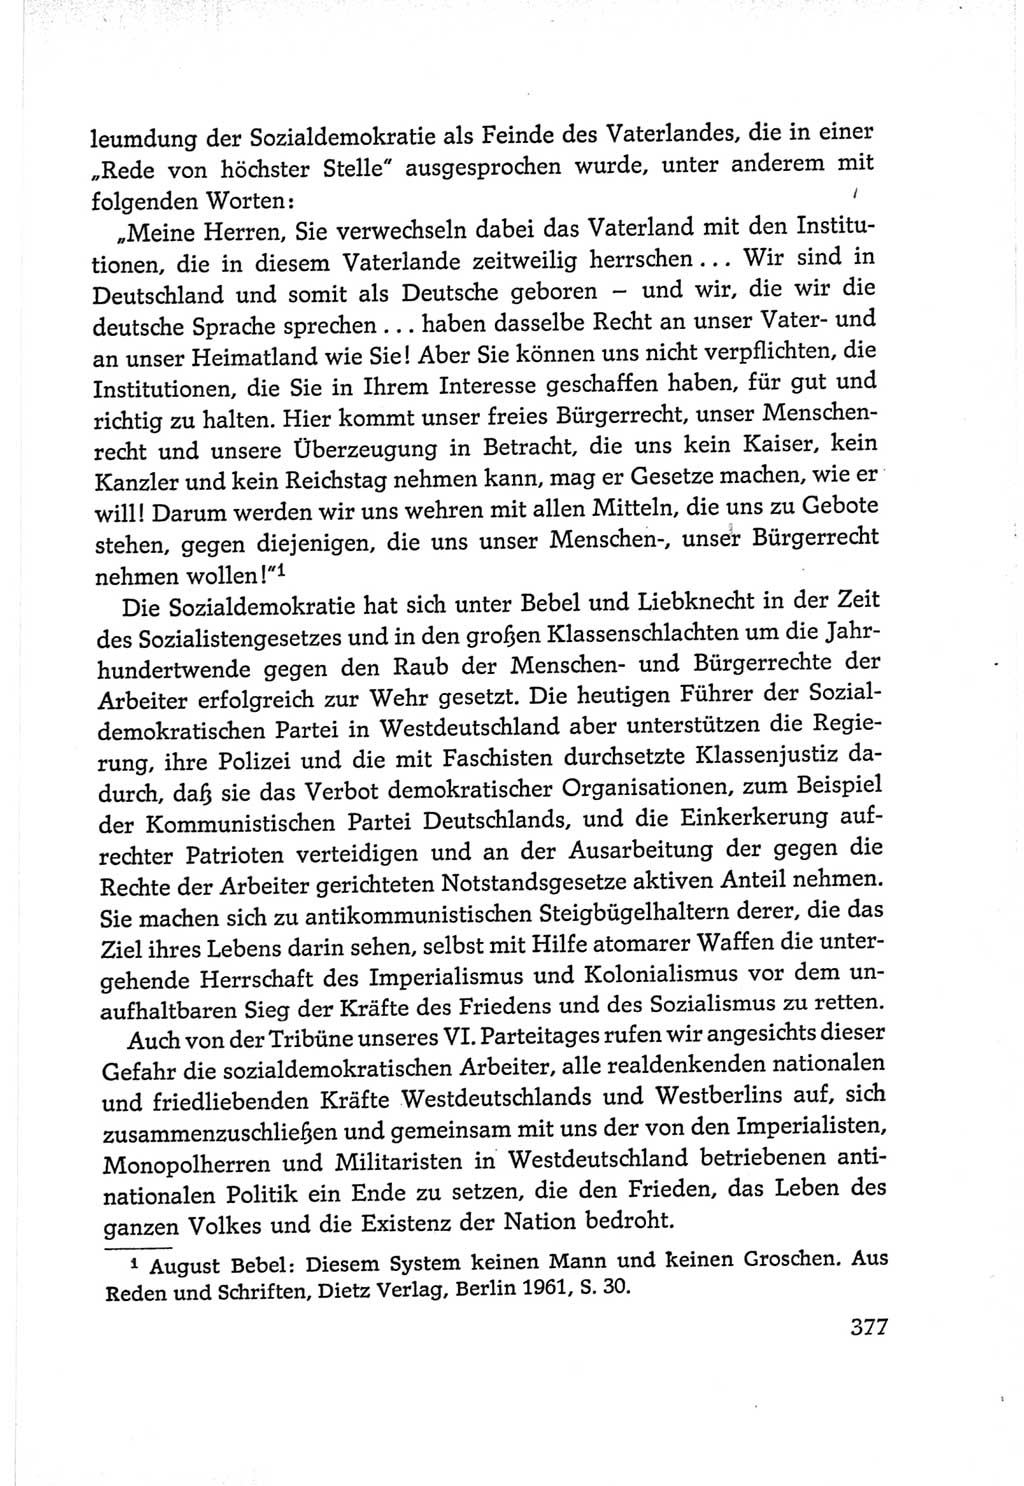 Protokoll der Verhandlungen des Ⅵ. Parteitages der Sozialistischen Einheitspartei Deutschlands (SED) [Deutsche Demokratische Republik (DDR)] 1963, Band Ⅰ, Seite 377 (Prot. Verh. Ⅵ. PT SED DDR 1963, Bd. Ⅰ, S. 377)